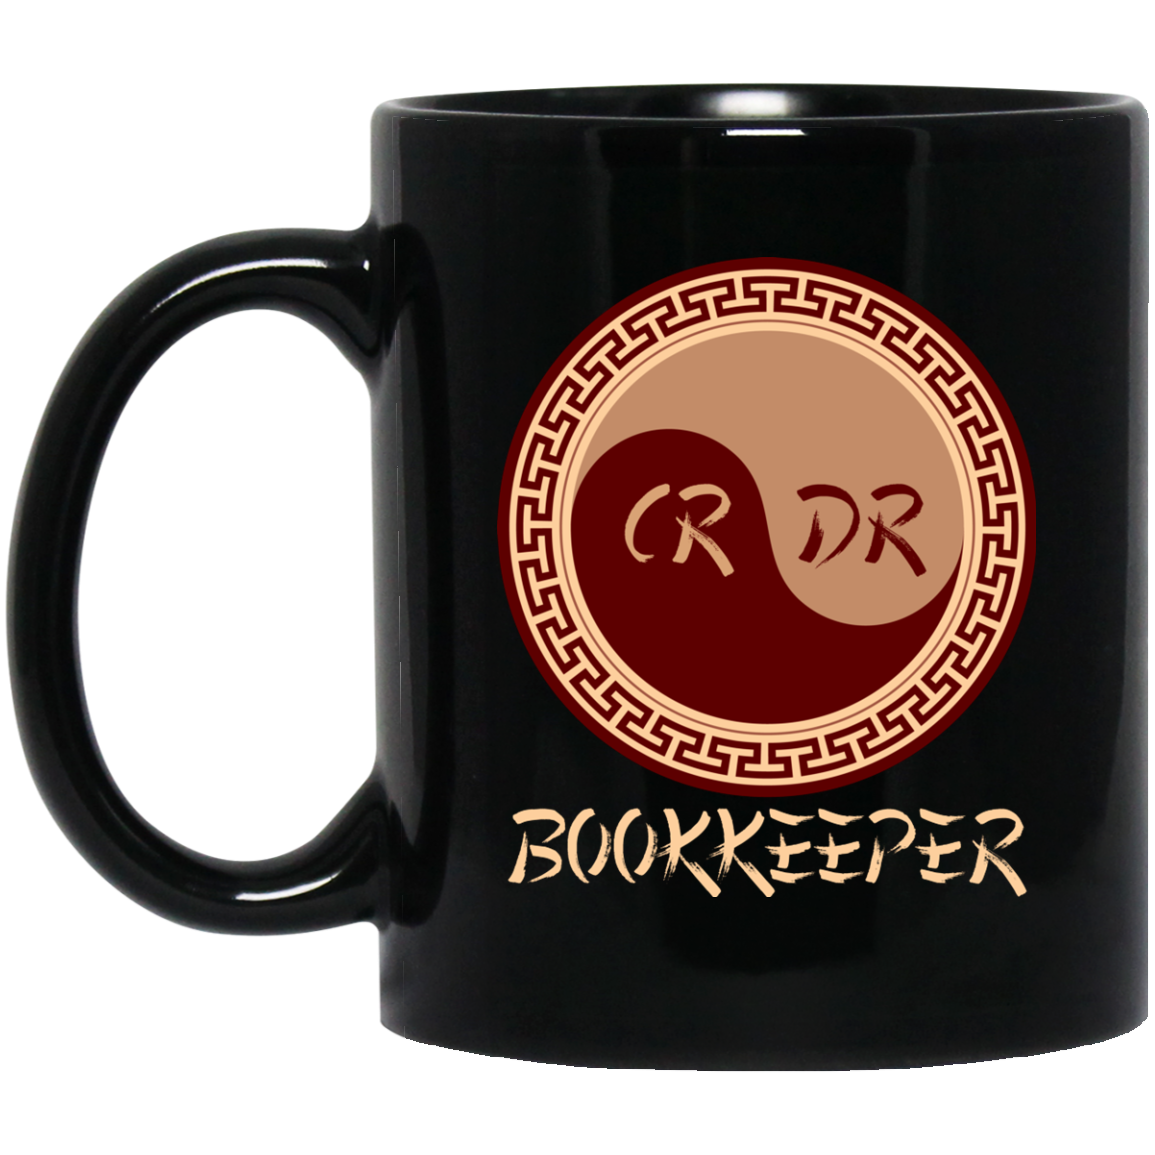 Bookkeeper Gifts - Funny Bookkeeper Mug - GoneBold.gift